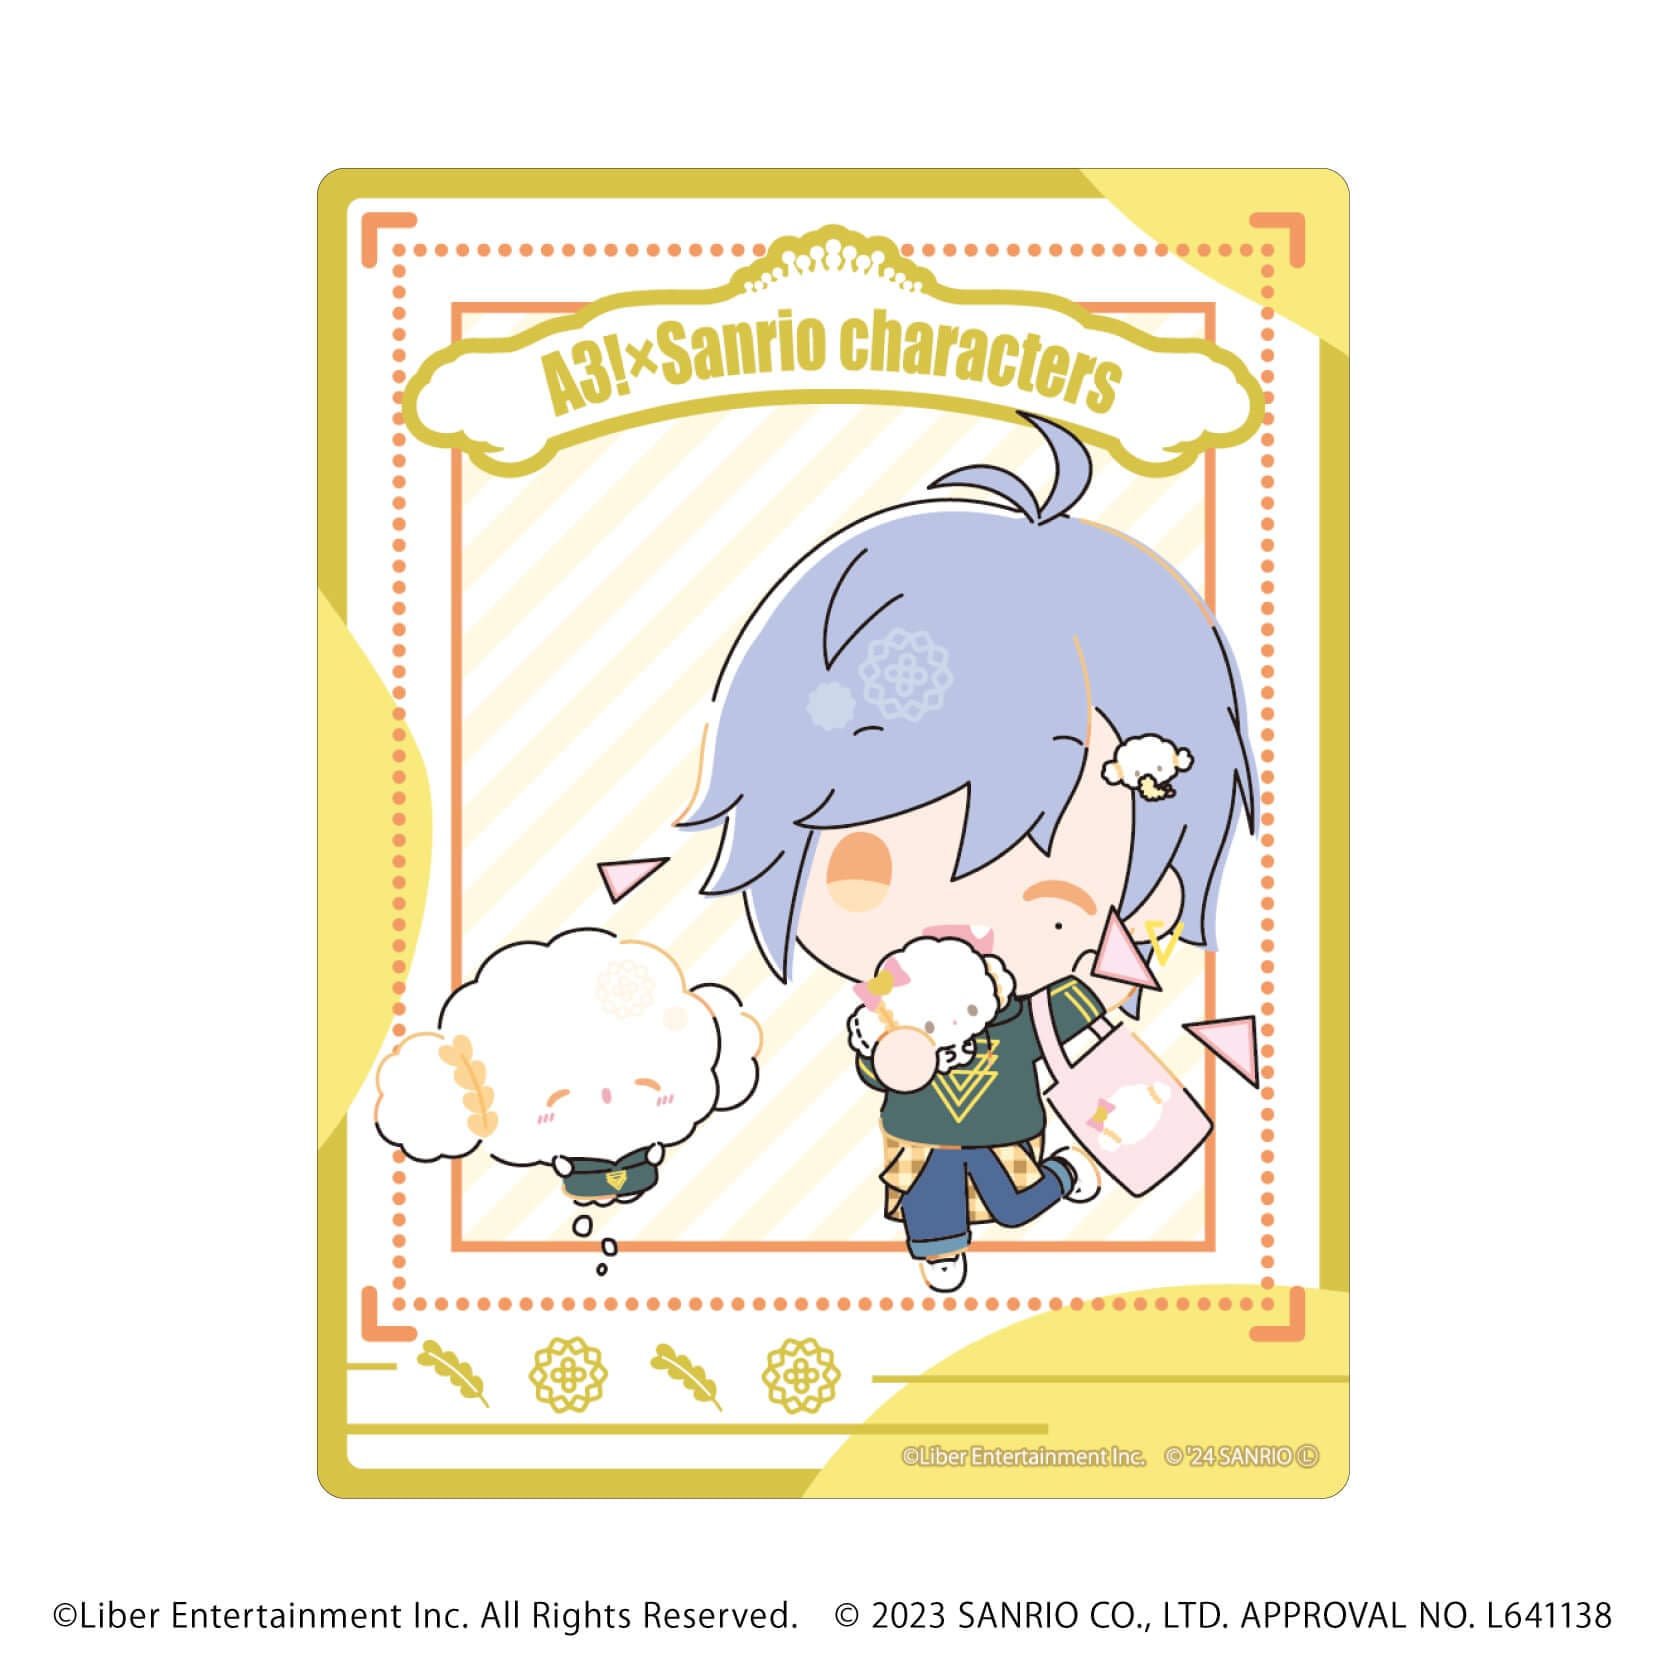 アクリルカード「A3!×Sanrio characters」09/S＆S ブラインド(12種)(ミニキャライラスト)